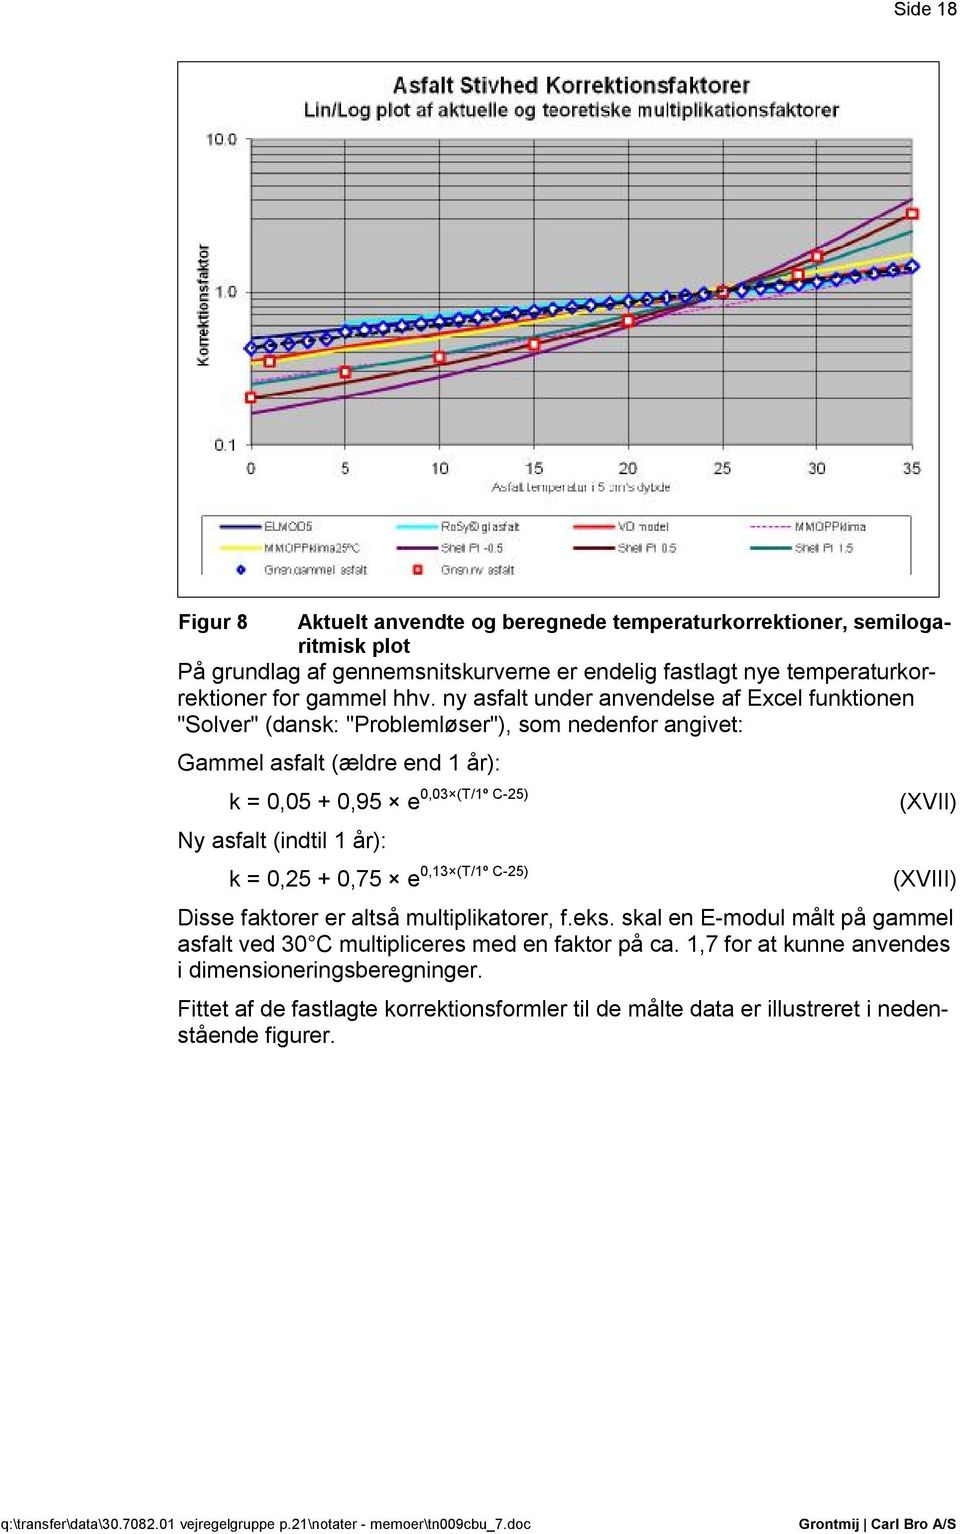 ny asfalt under anvendelse af Excel funktionen "Solver" (dansk: "Problemløser"), som nedenfor angivet: Gammel asfalt (ældre end 1 år): 0,03 (T/1º C-25) k = 0,05 + 0,95 e (XVII) Ny